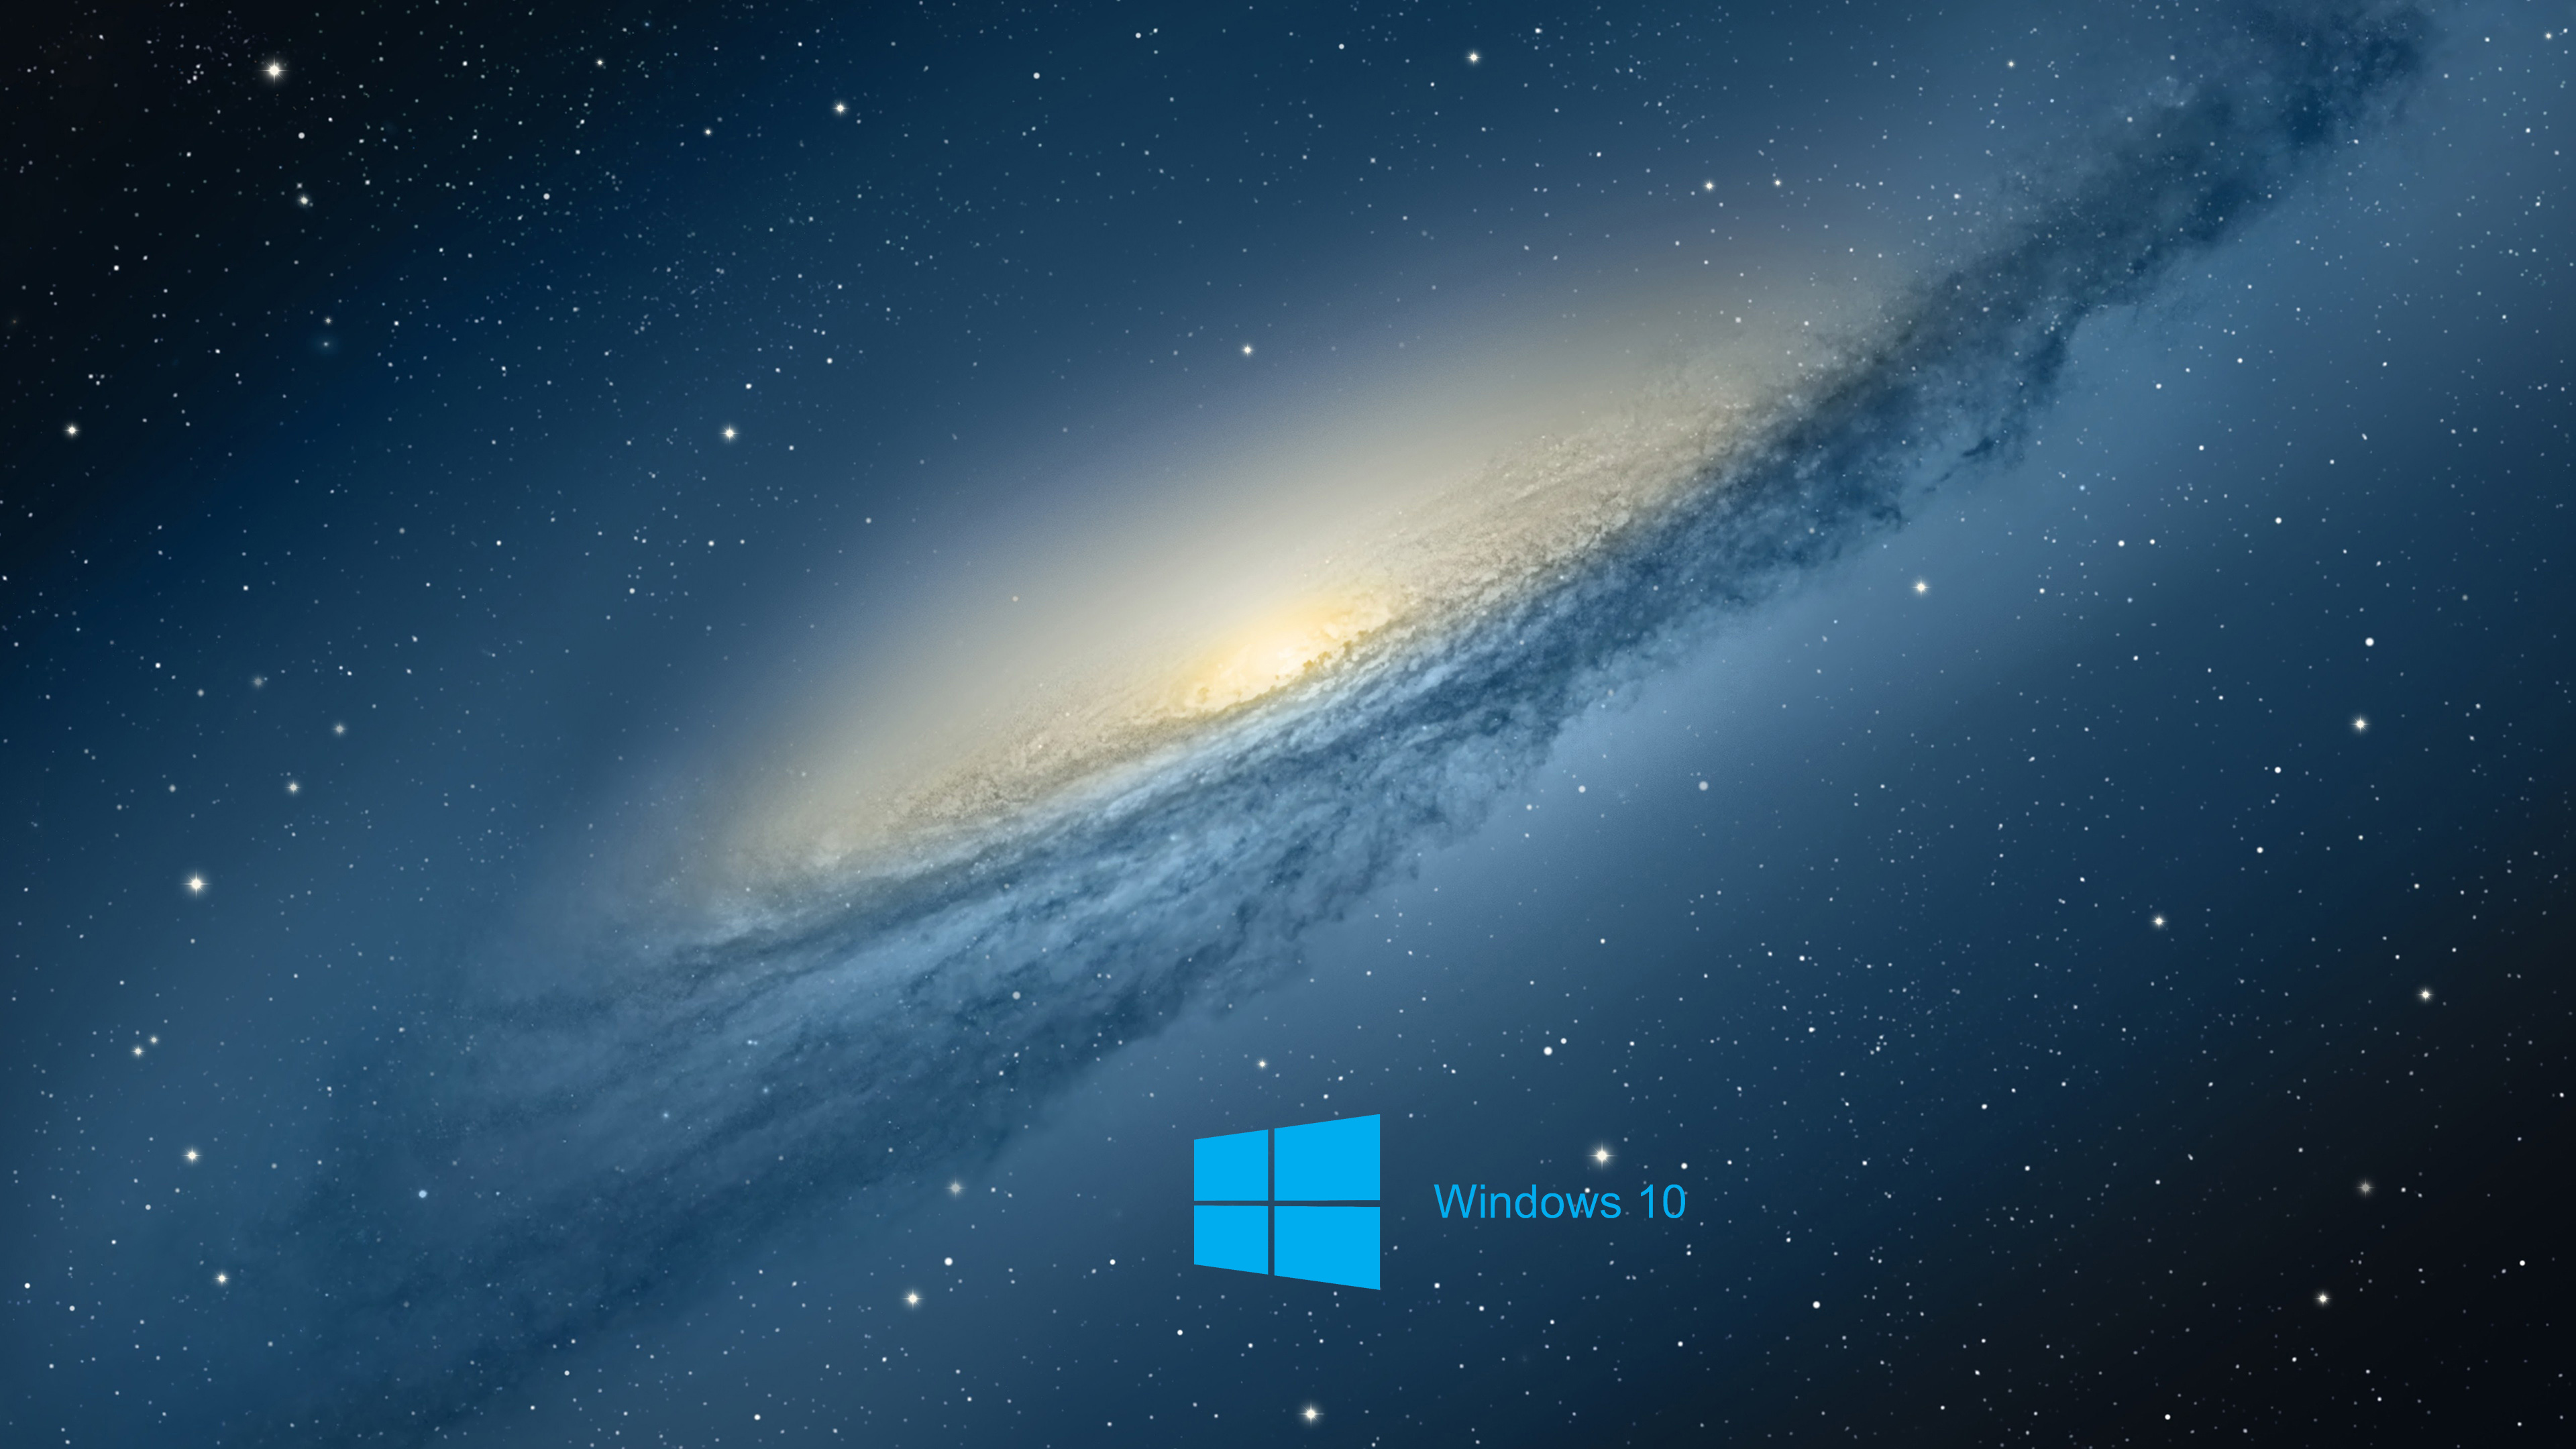 Download Gambar Wallpaper Hd Laptop Windows 10 terbaru 2020